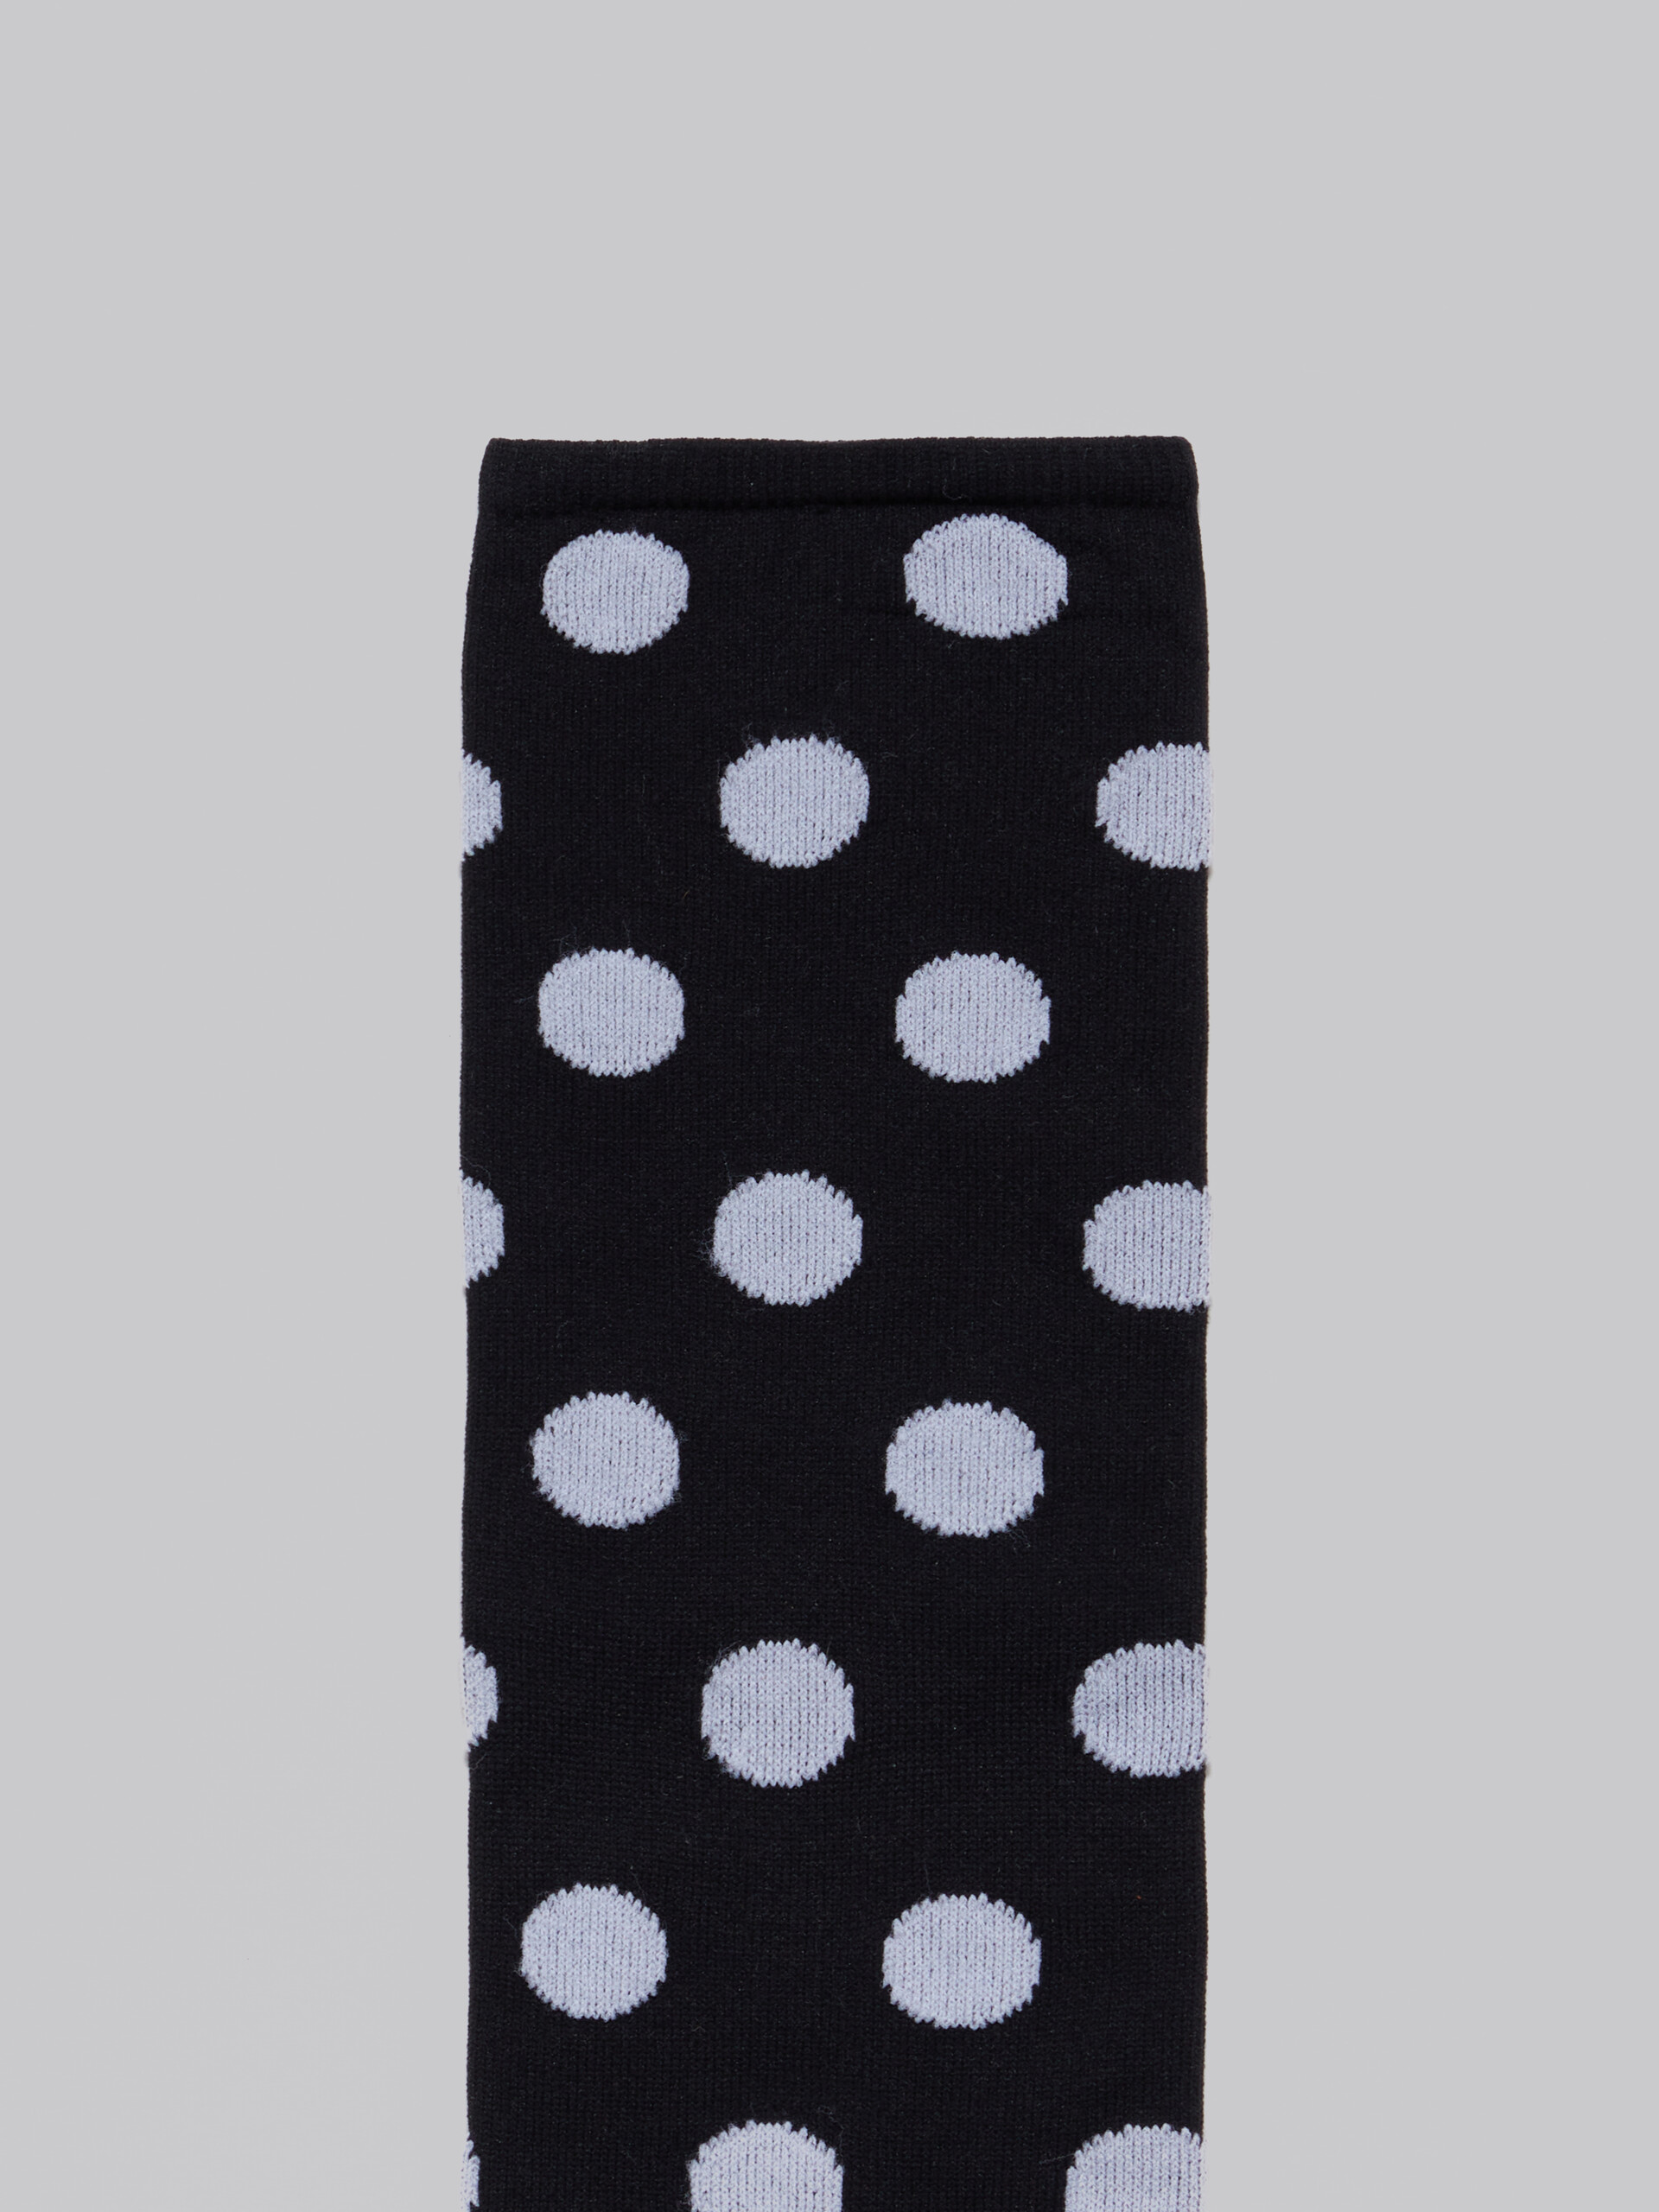 Black nylon socks with polka dots - Socks - Image 3